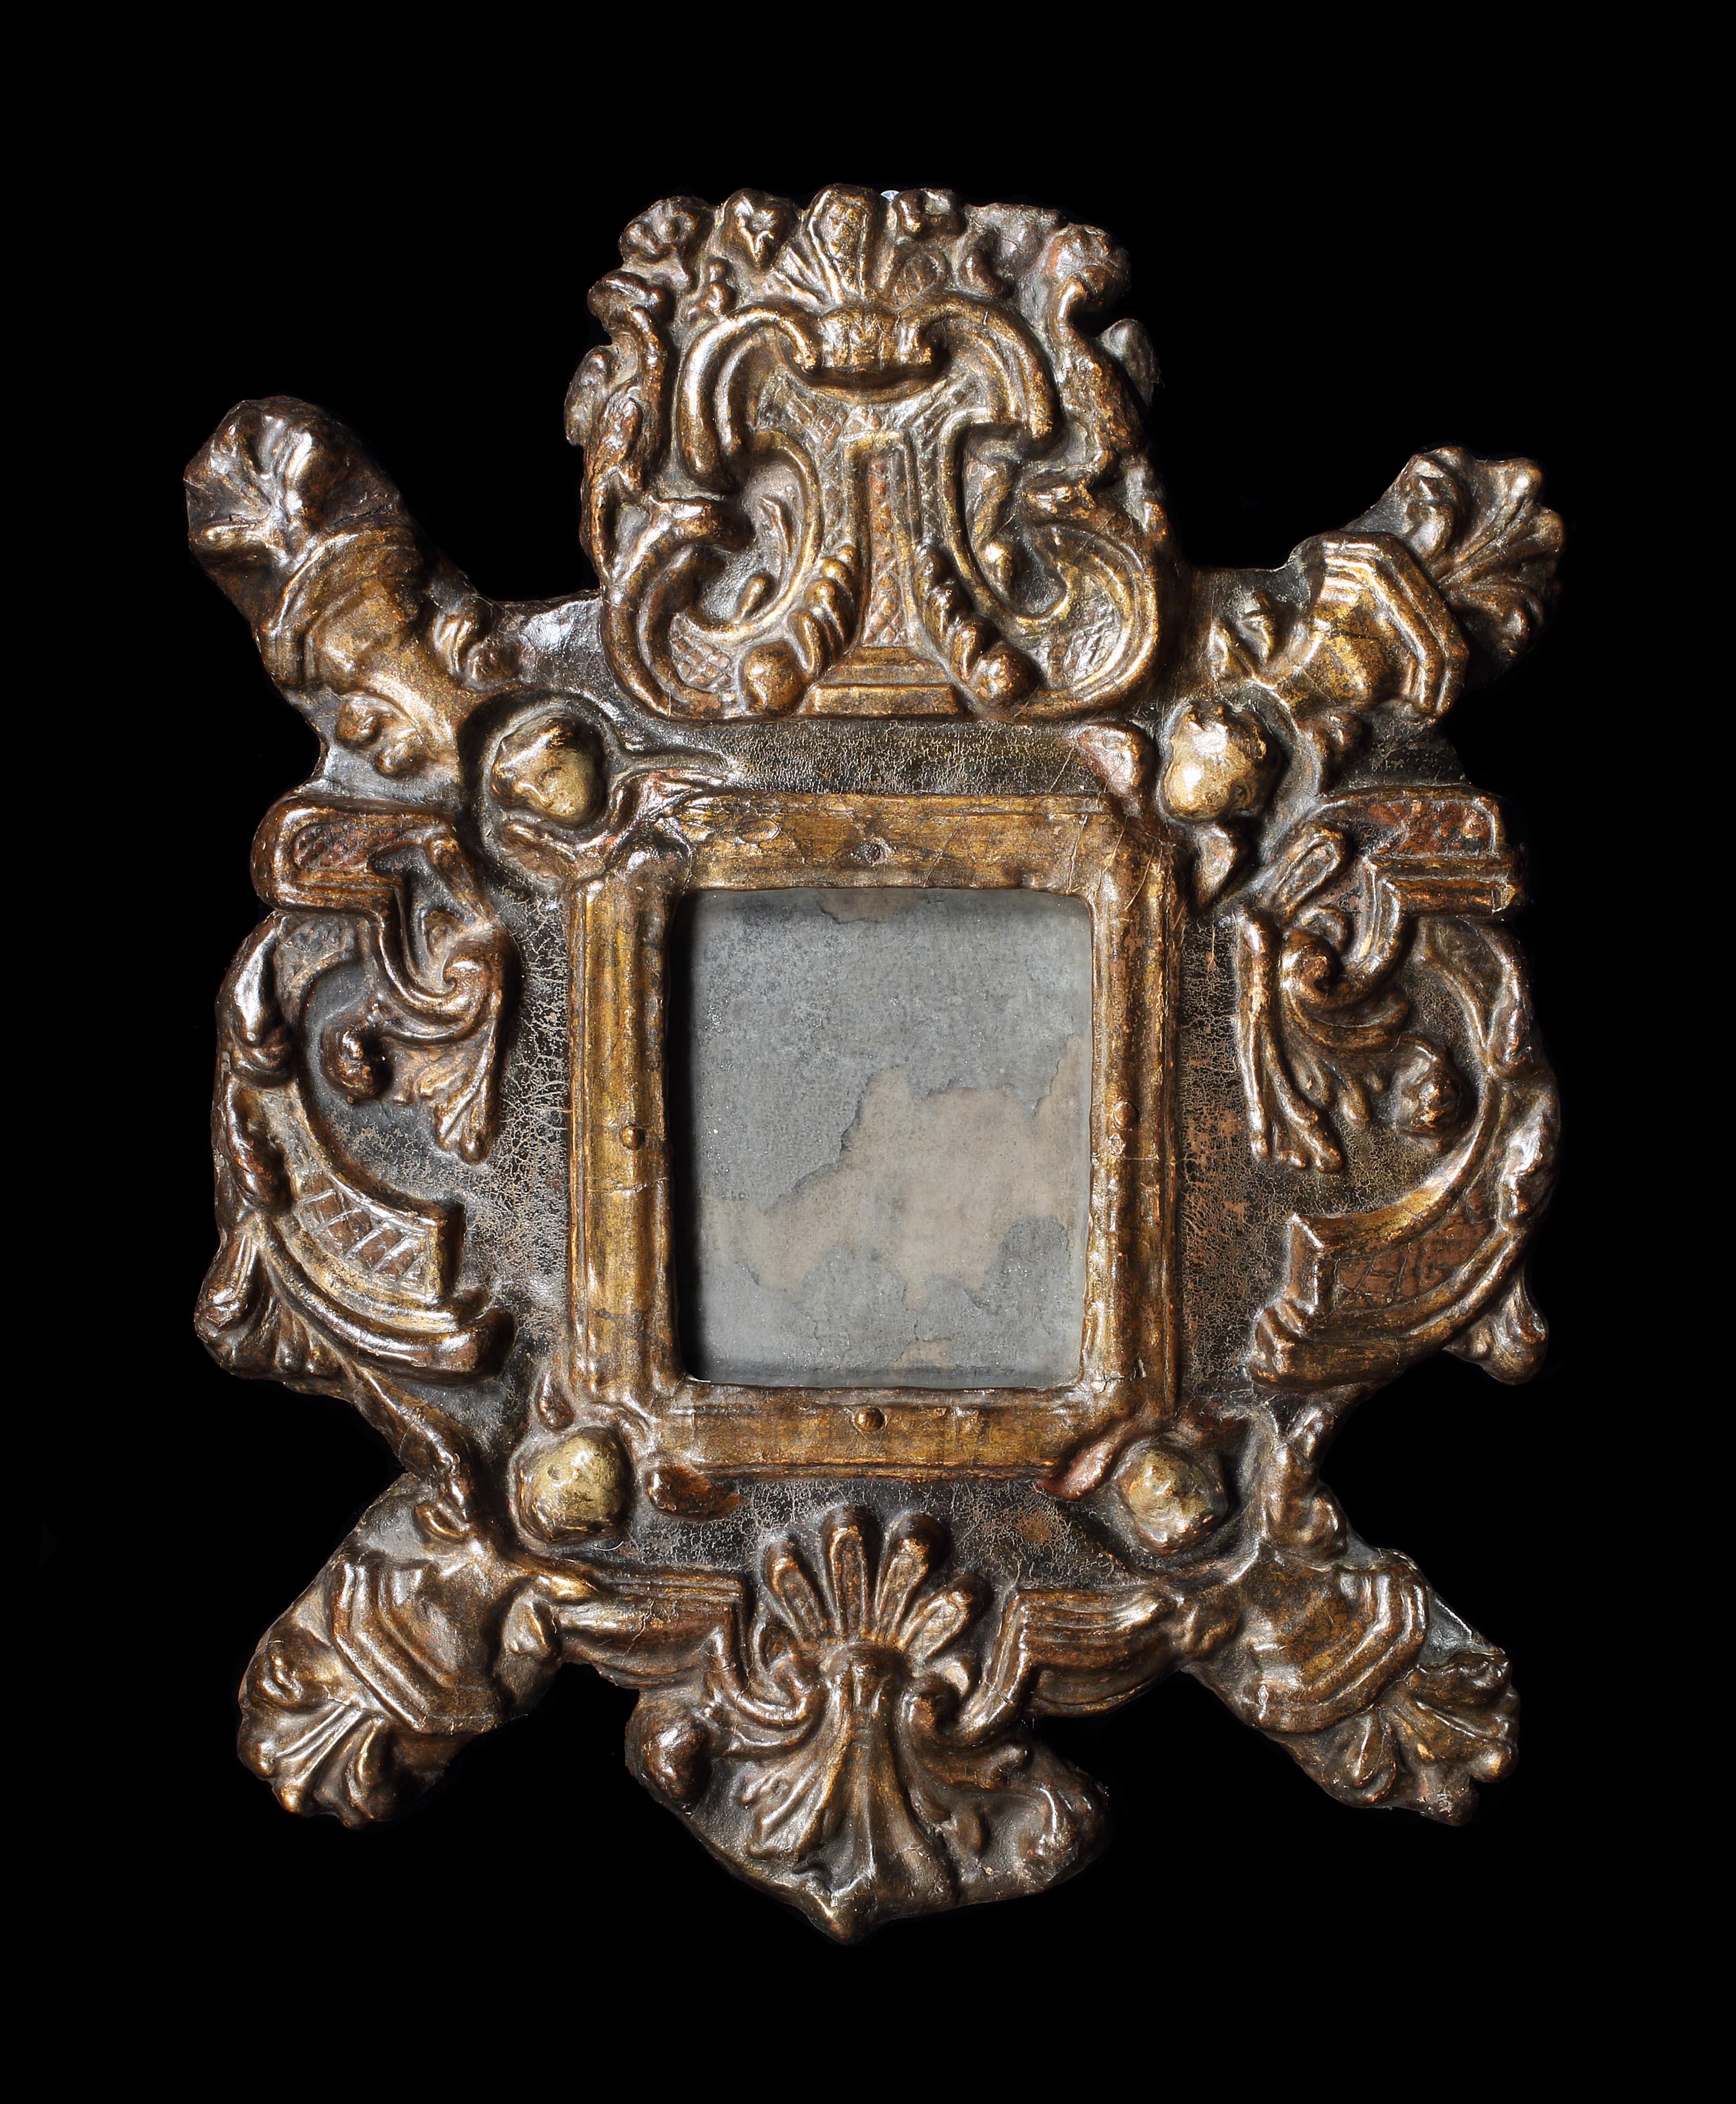 Dieser bezaubernde kleine Spiegel ist in einem außergewöhnlichen Zustand mit seiner ursprünglichen Vergoldung und Spiegelplatte erhalten geblieben, was sehr ungewöhnlich ist, insbesondere für ein Stück, das aus einem empfindlichen Medium wie